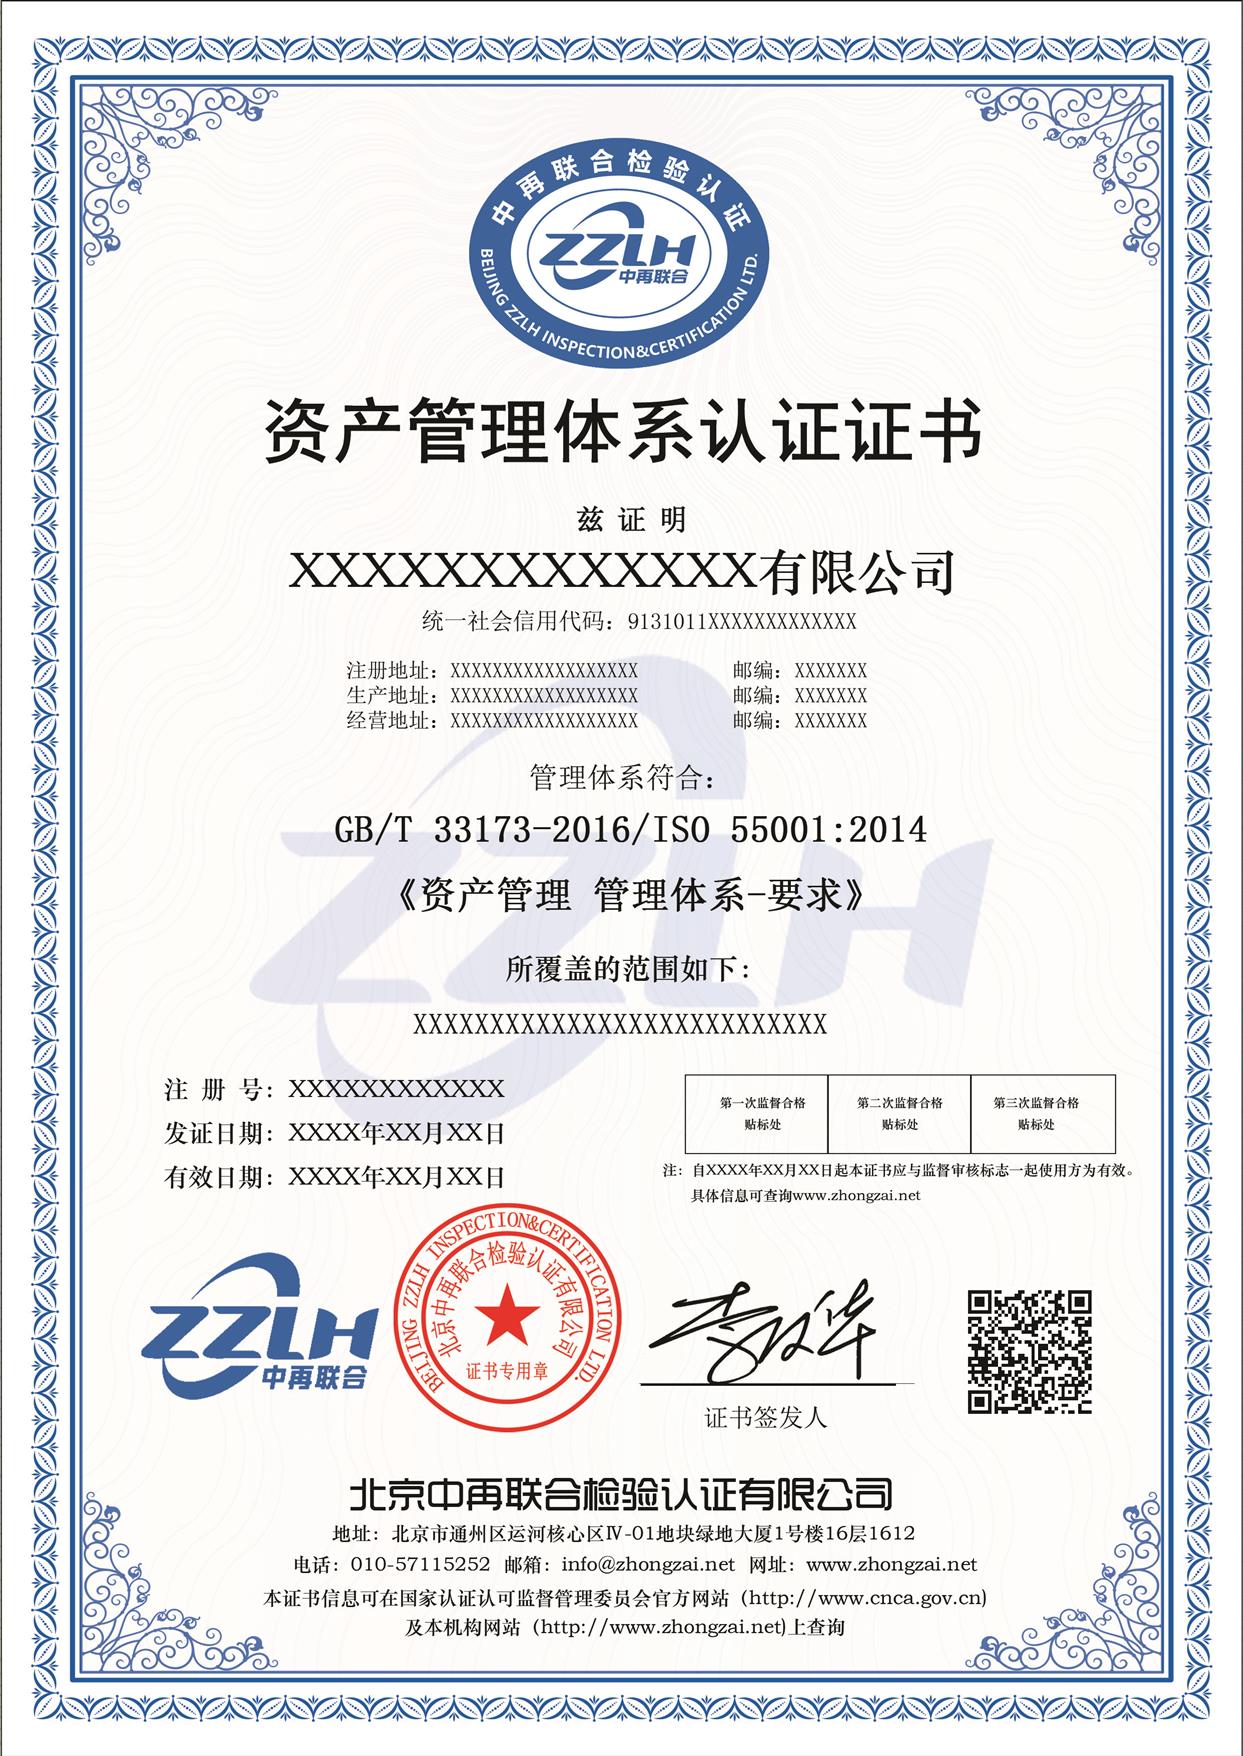 咸宁资产管理体系认证 GB/T33173-2016 工程服务